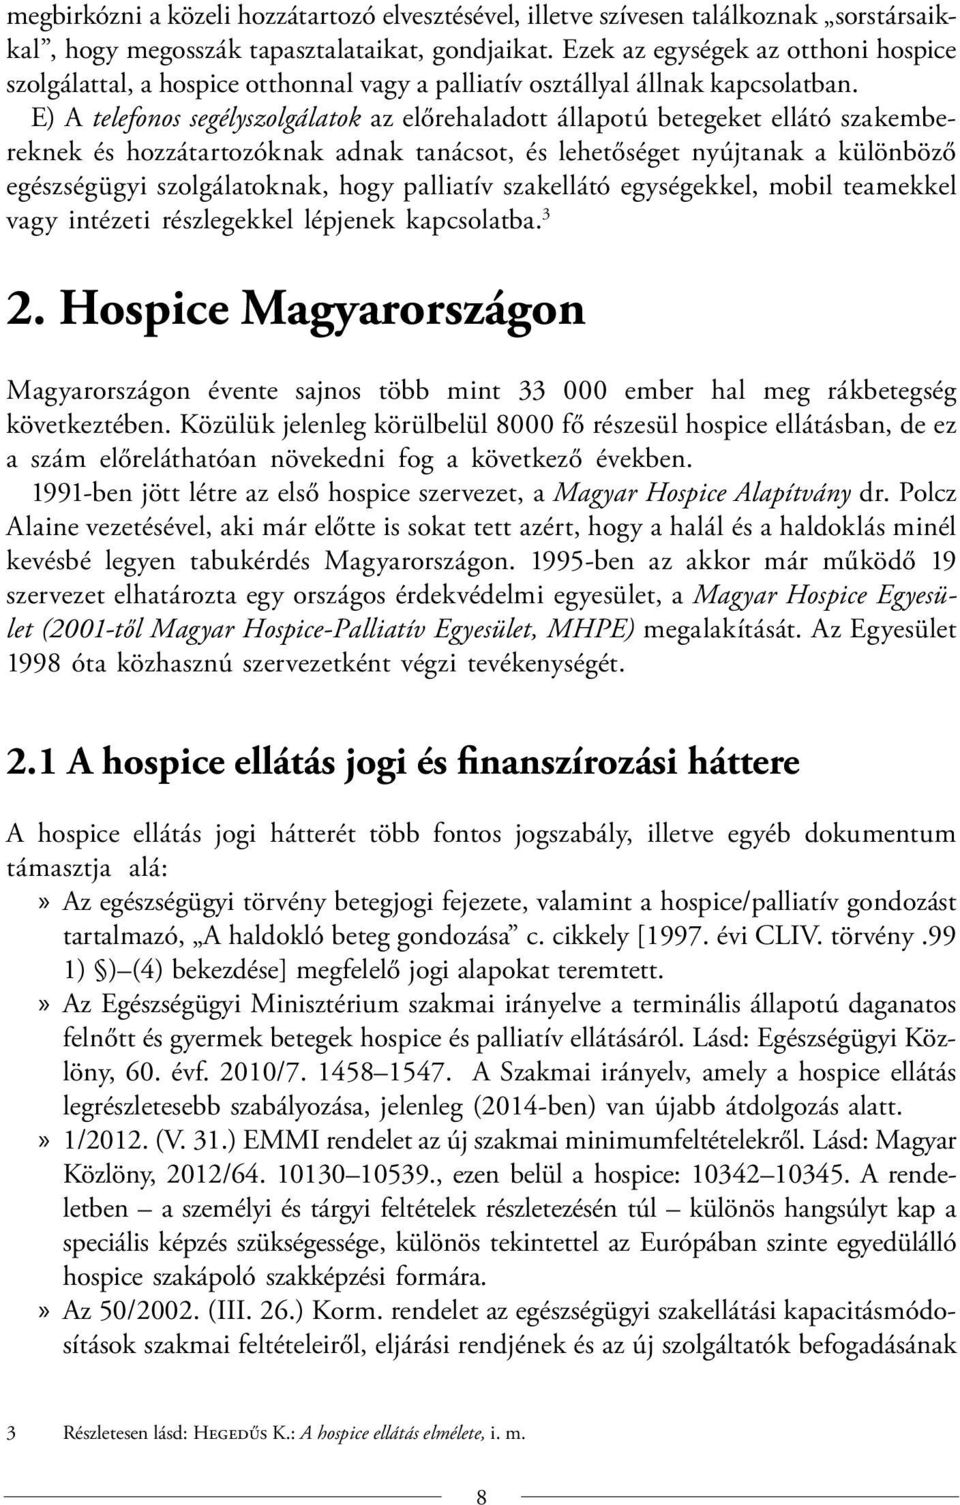 Hospice ellátás Magyarországon - PDF Ingyenes letöltés